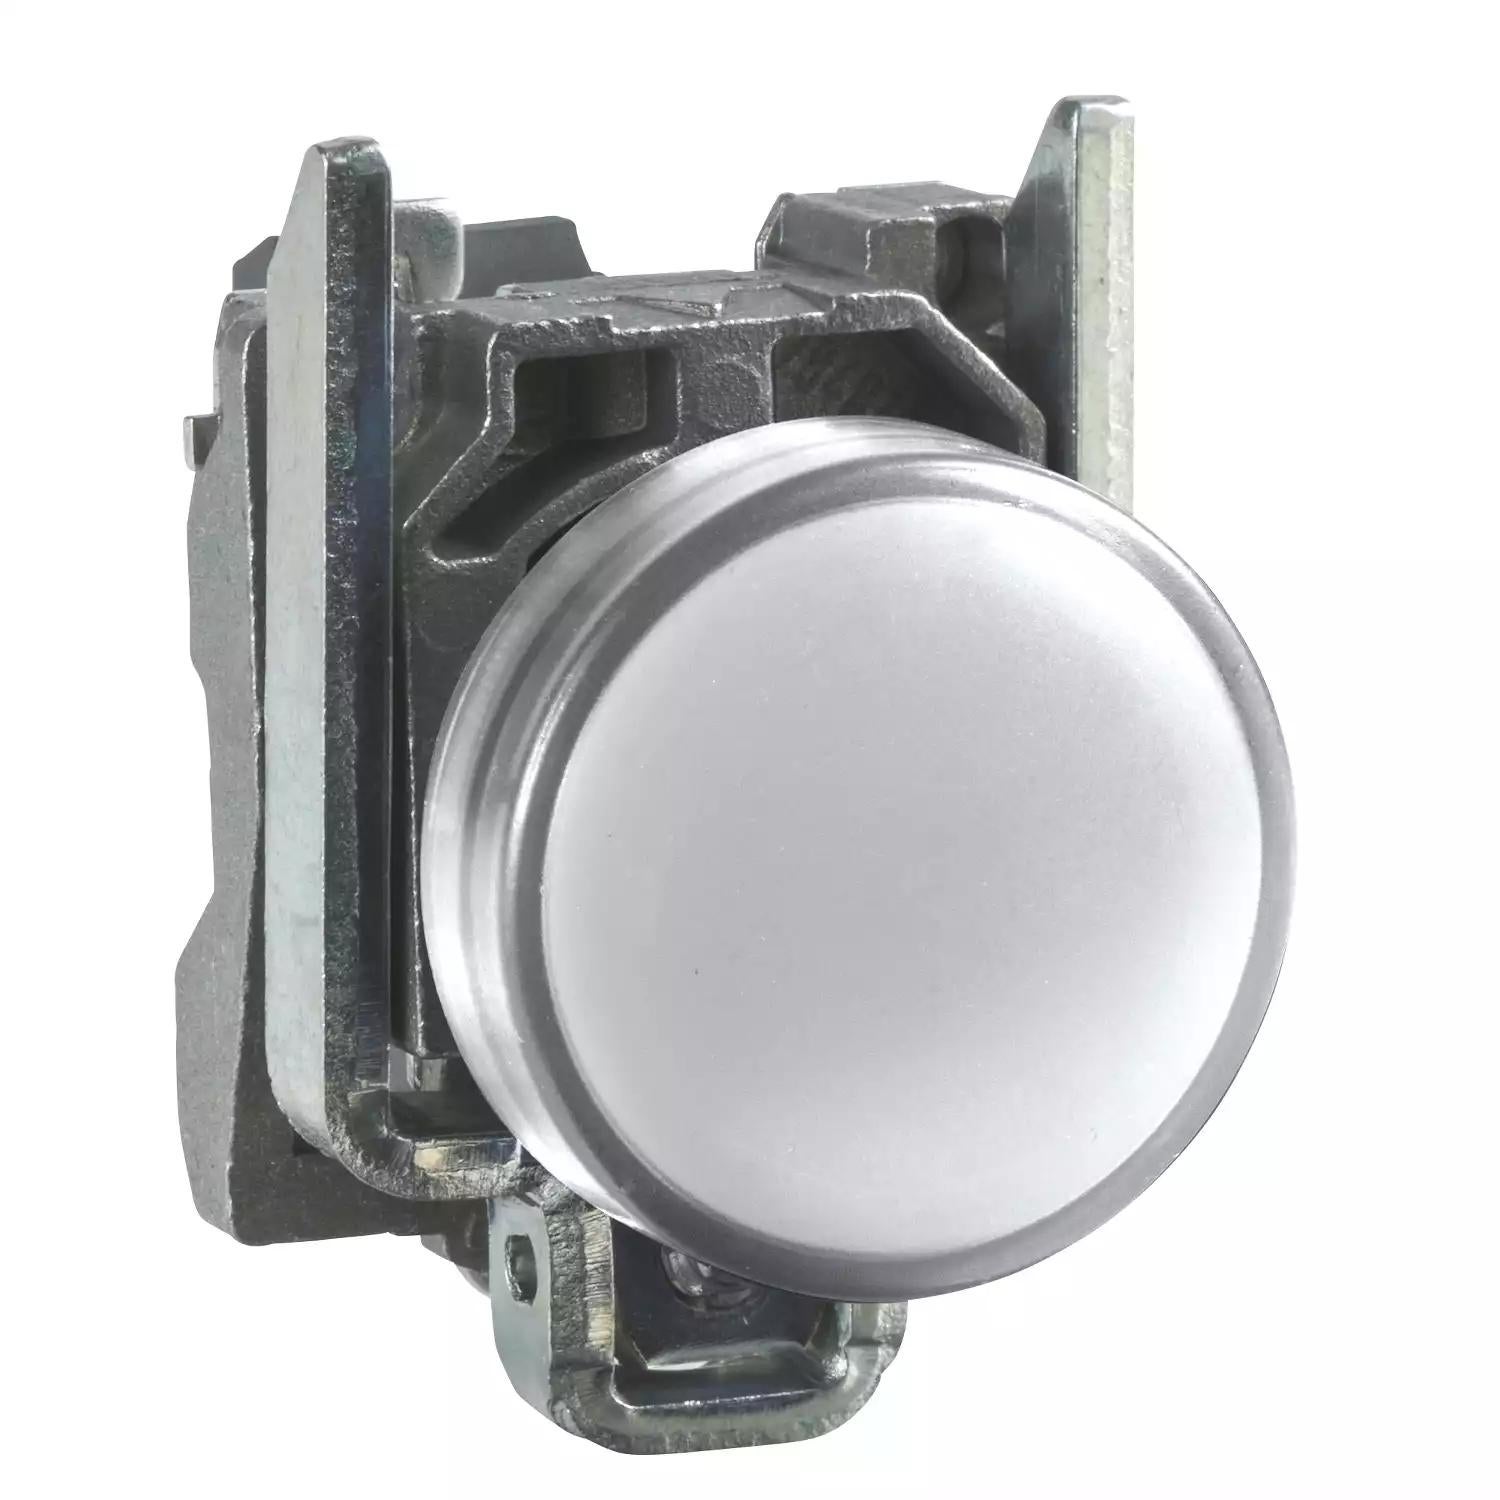 Harmony XB4, Pilot light, metal, white, Ø22, plain lens with integral LED, 24 V AC/DC